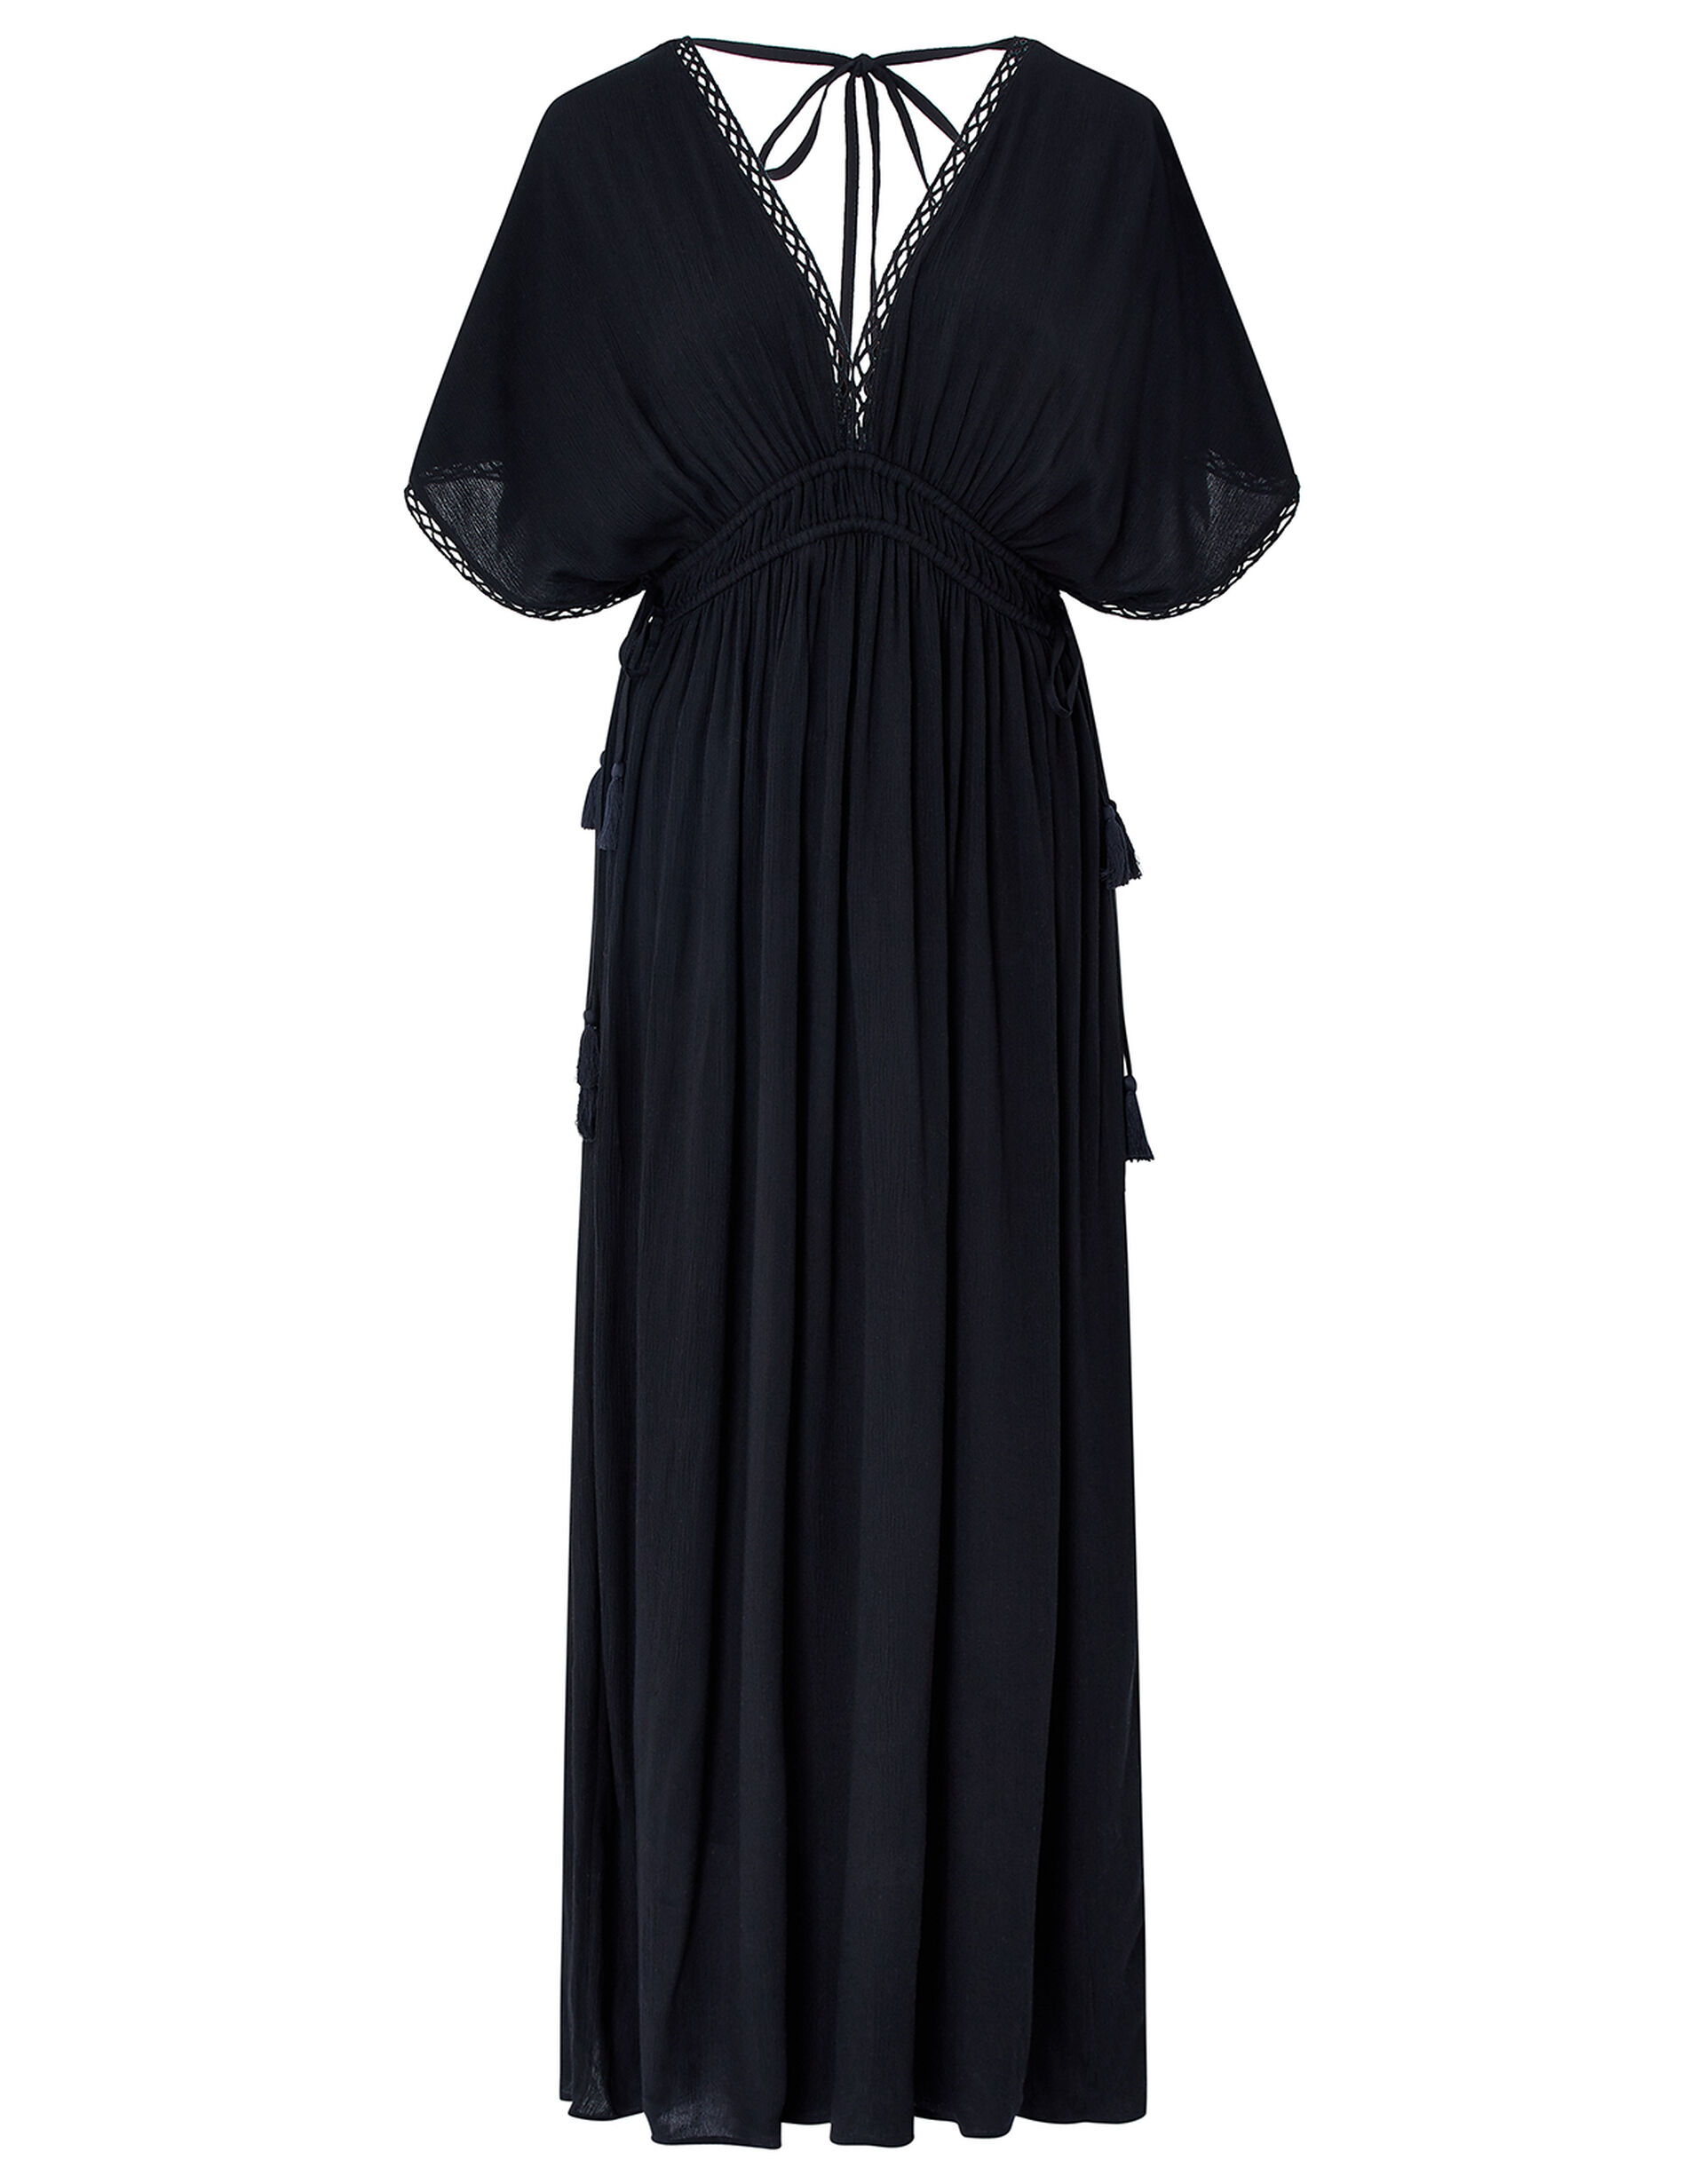 Lace Trim Maxi Dress, Black (BLACK), large